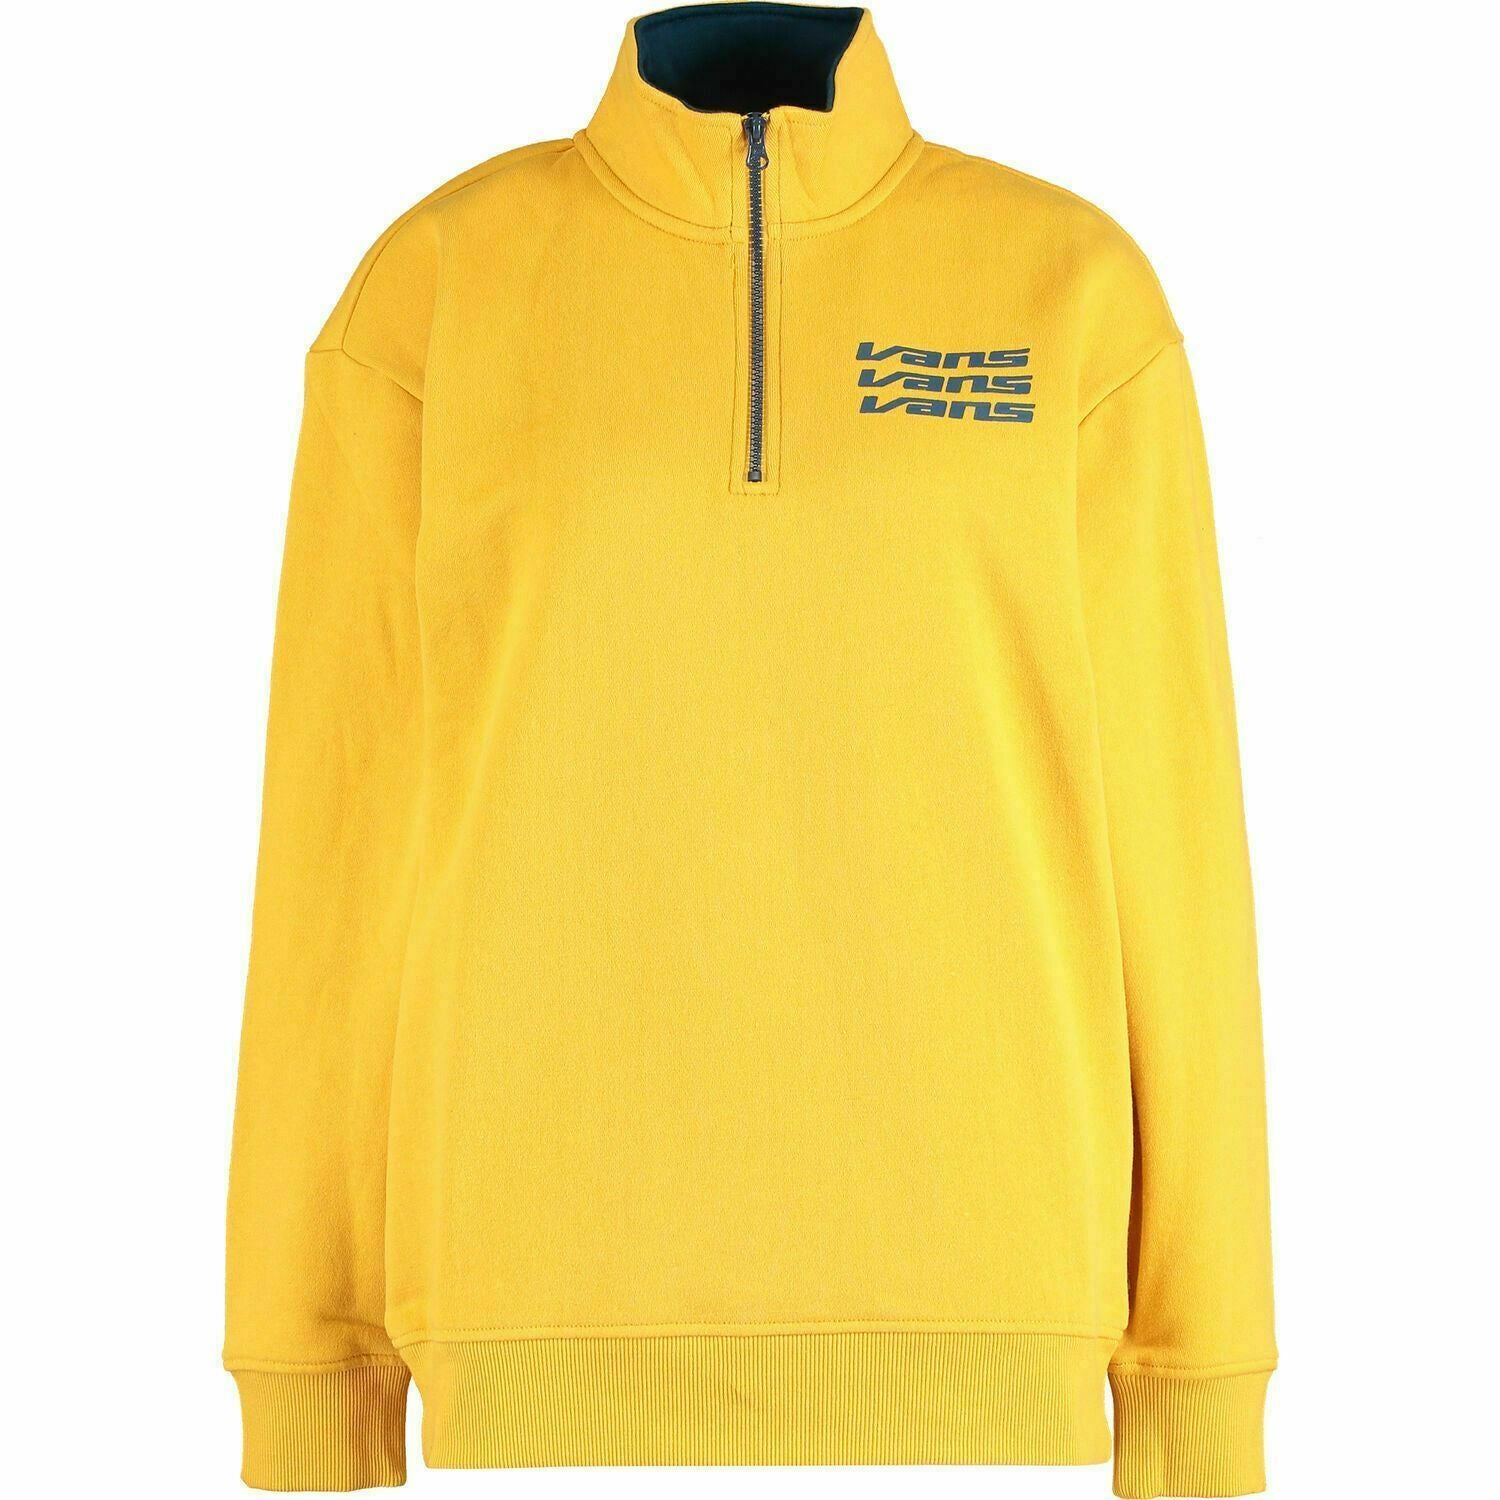 VANS Women's 'SIGN IT' Mock Zip Crew Sweatshirt / Jumper, Yellow, size S